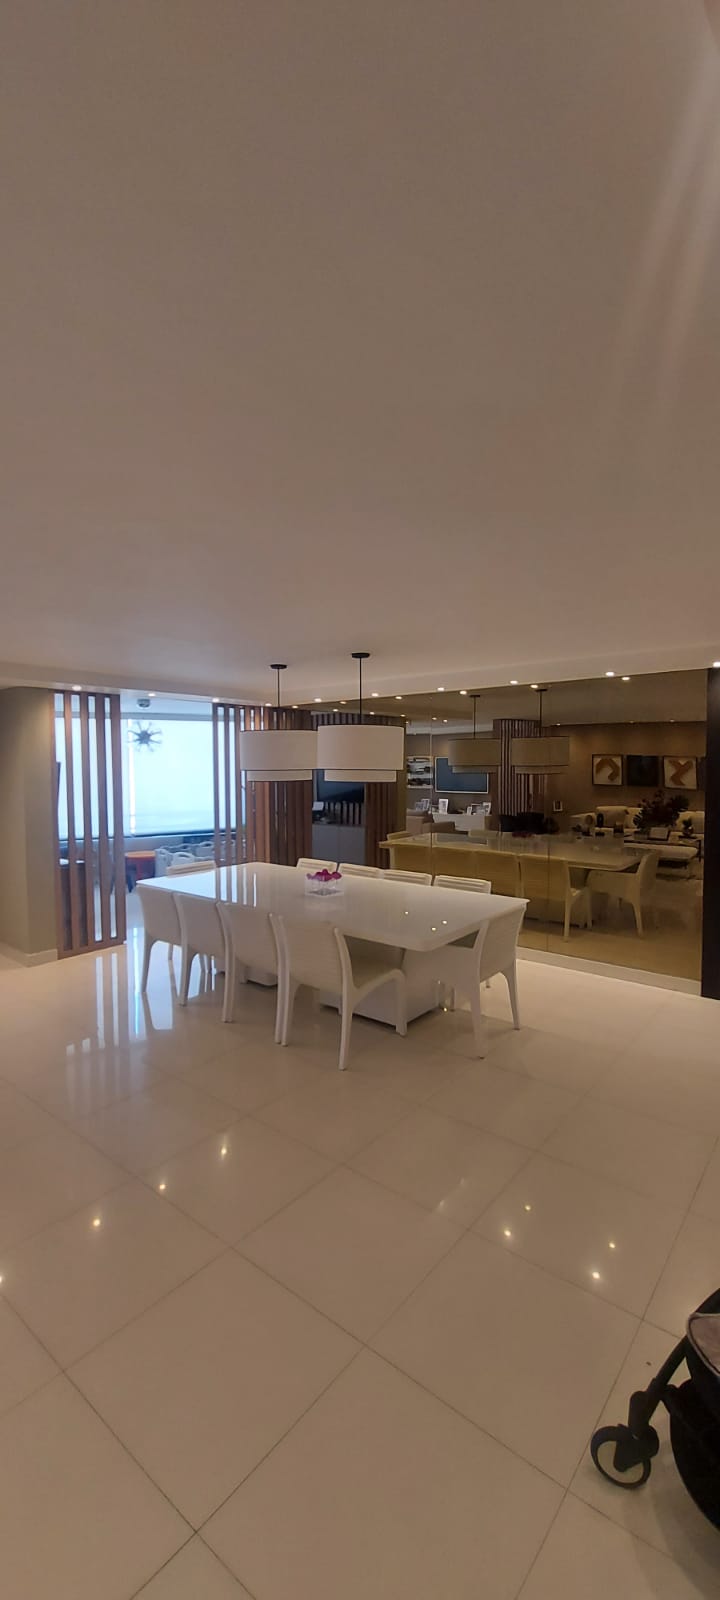 Acquire Propiedades de Lujo en Panama - Luxury Property